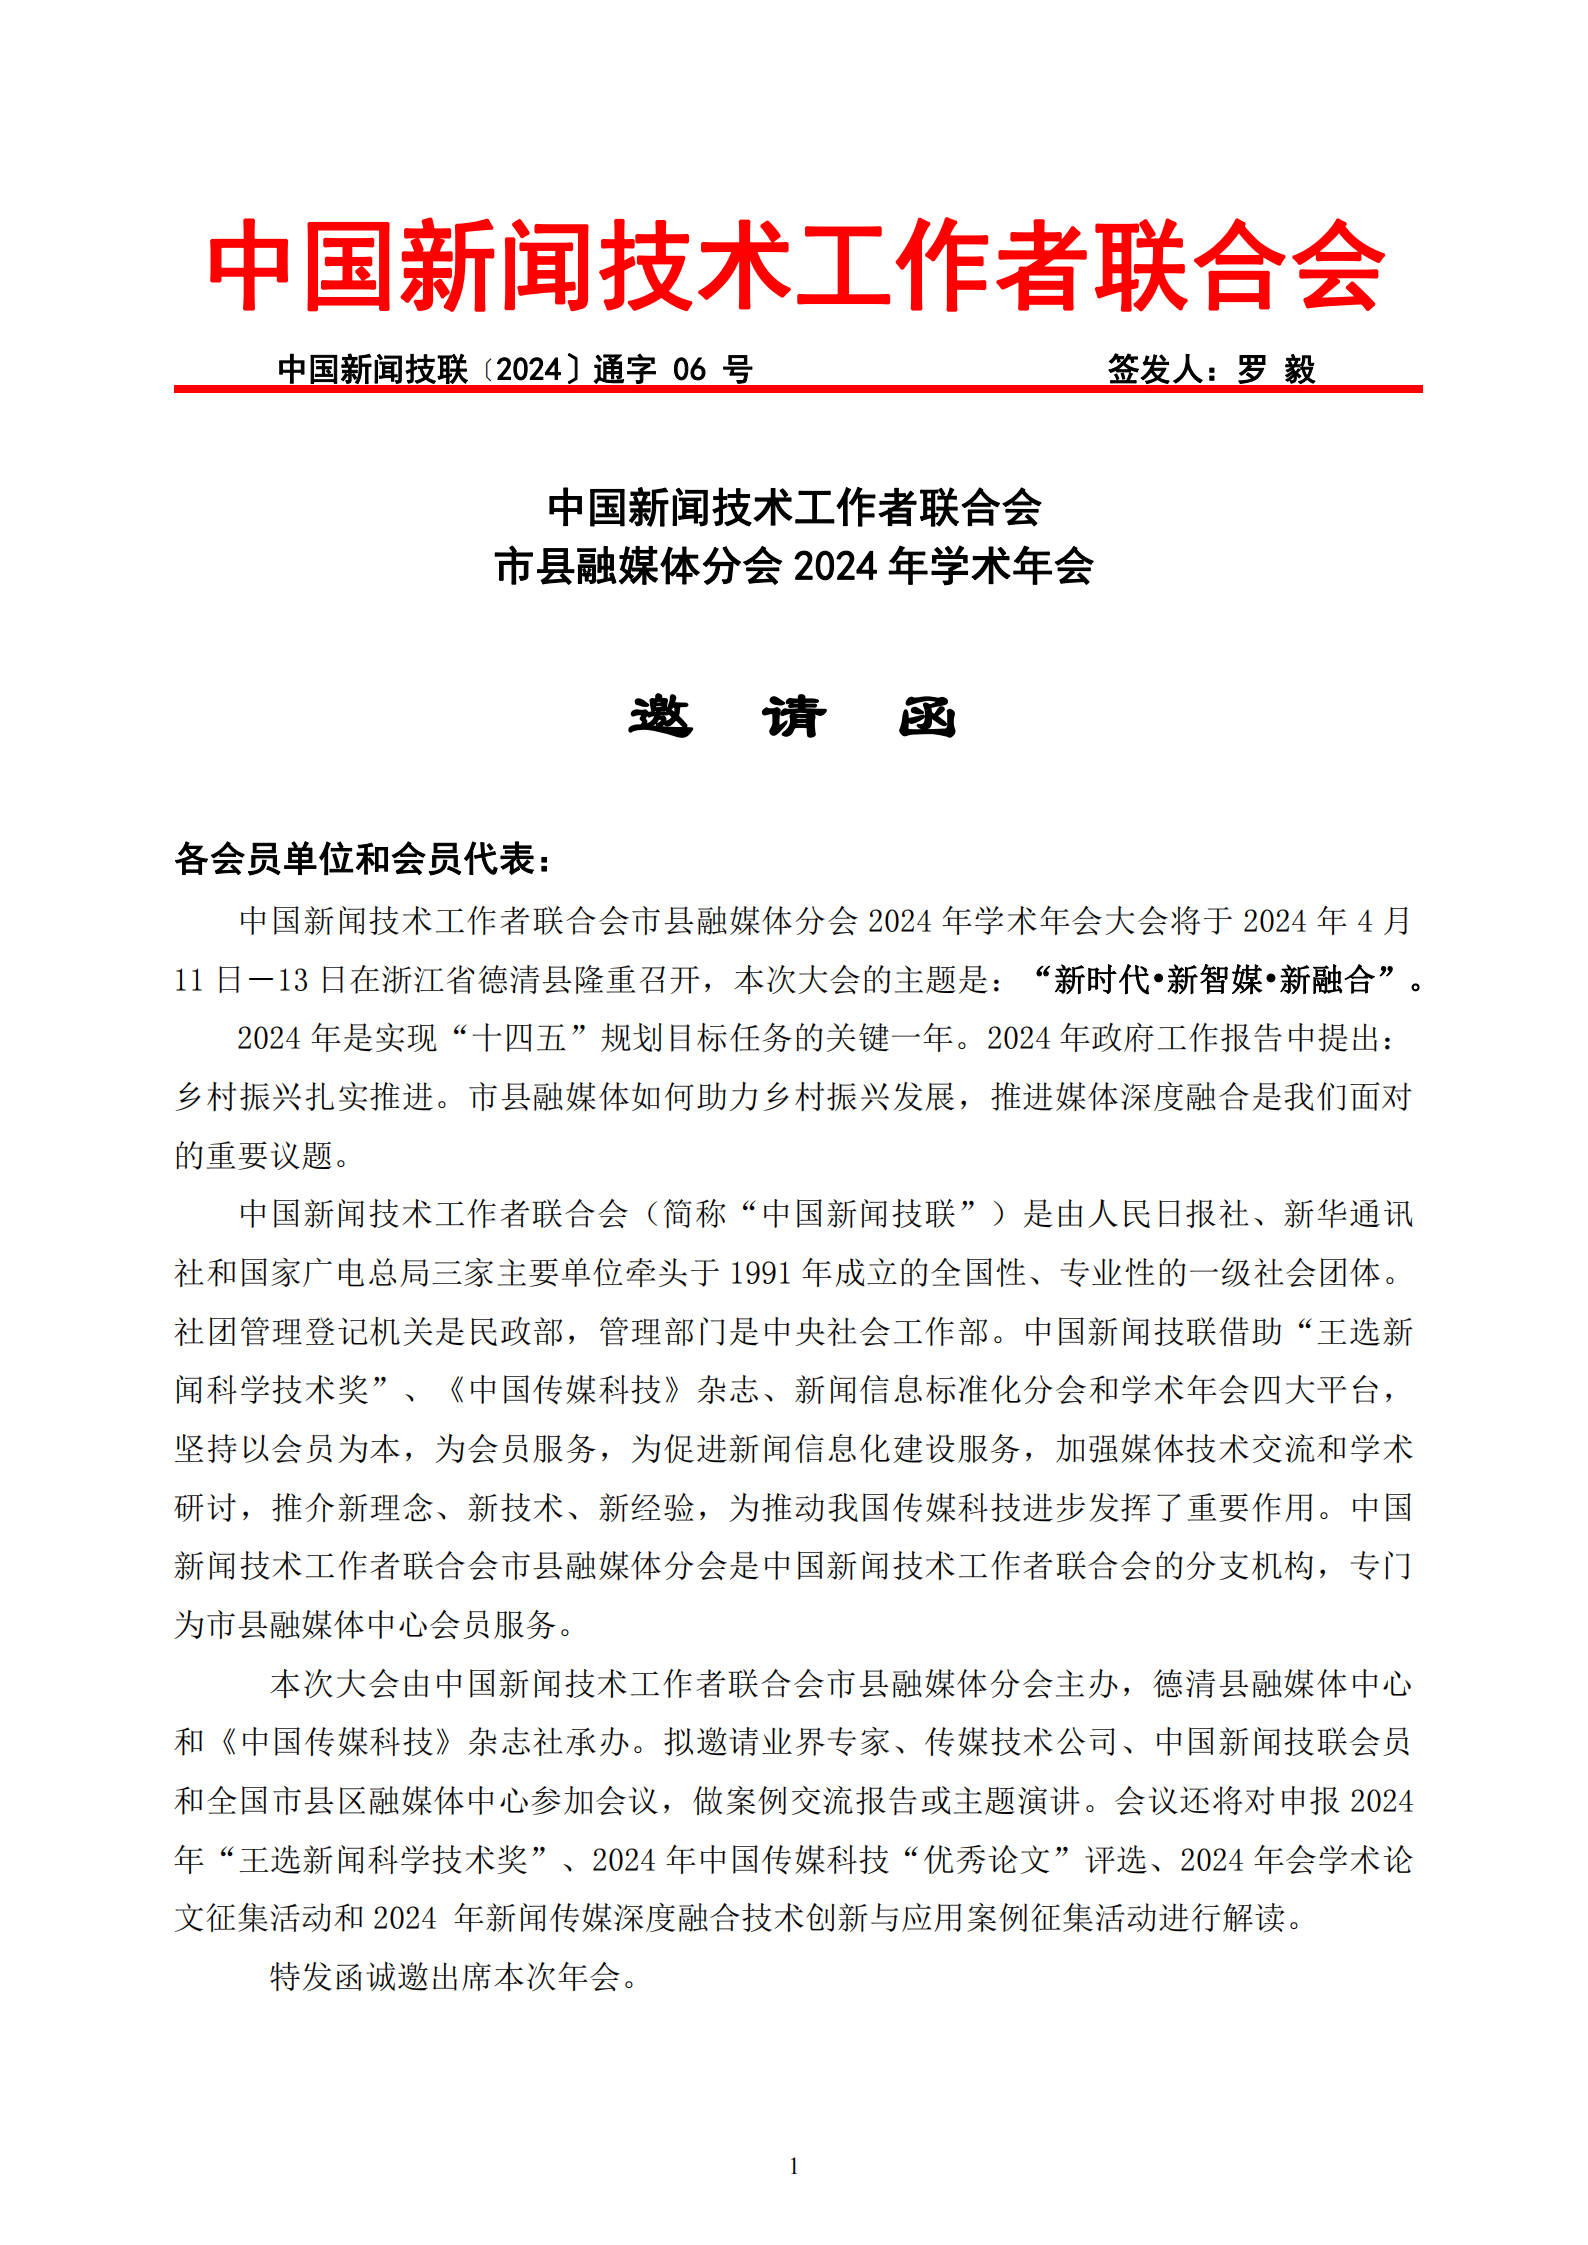 中国新闻技联市县融媒体分会2024年学术年会邀请函_00.png